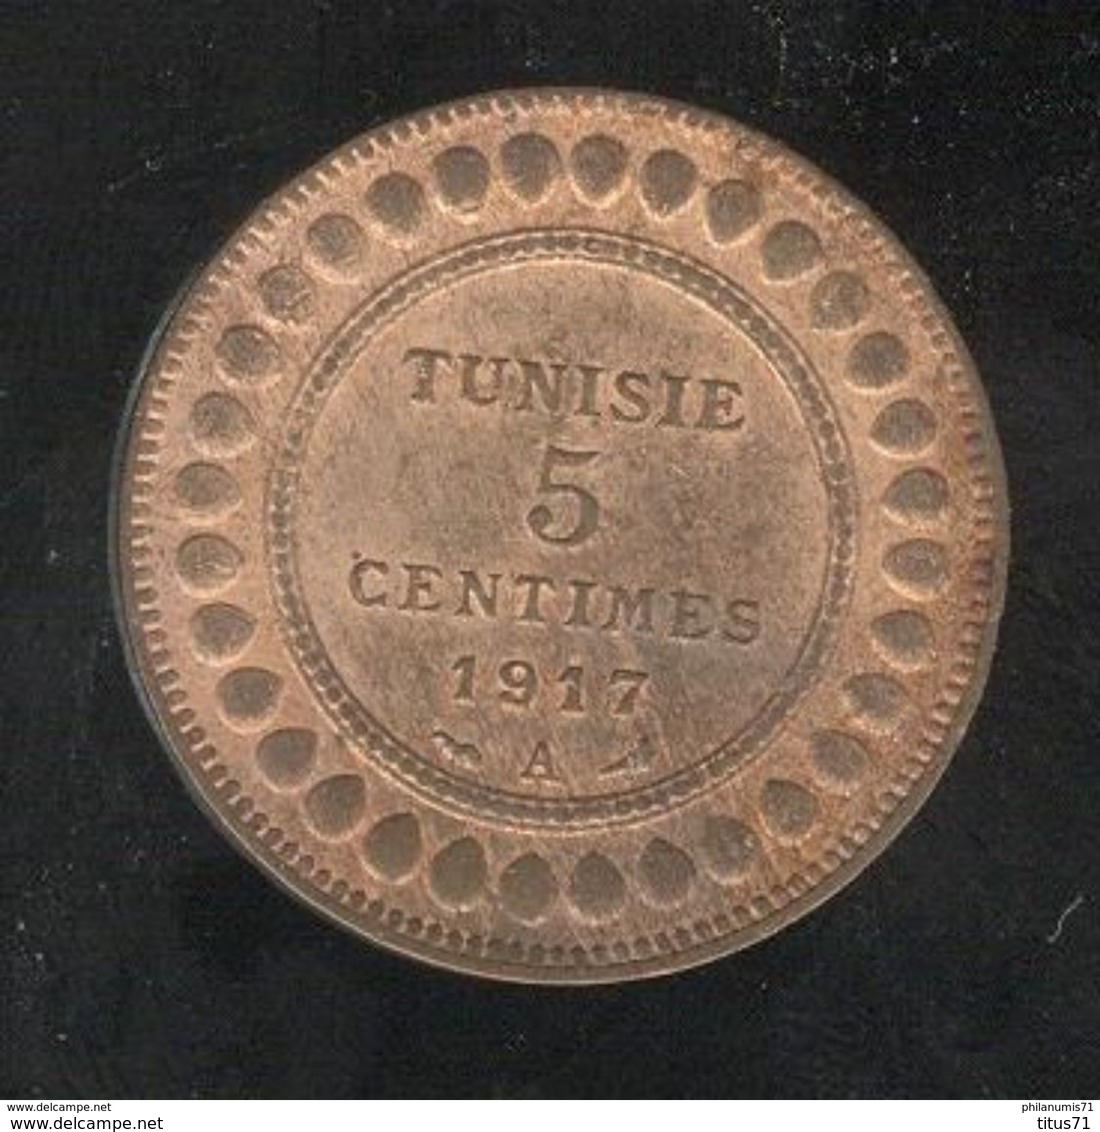 5 Centimes Tunisie 1917 A - Tunisie